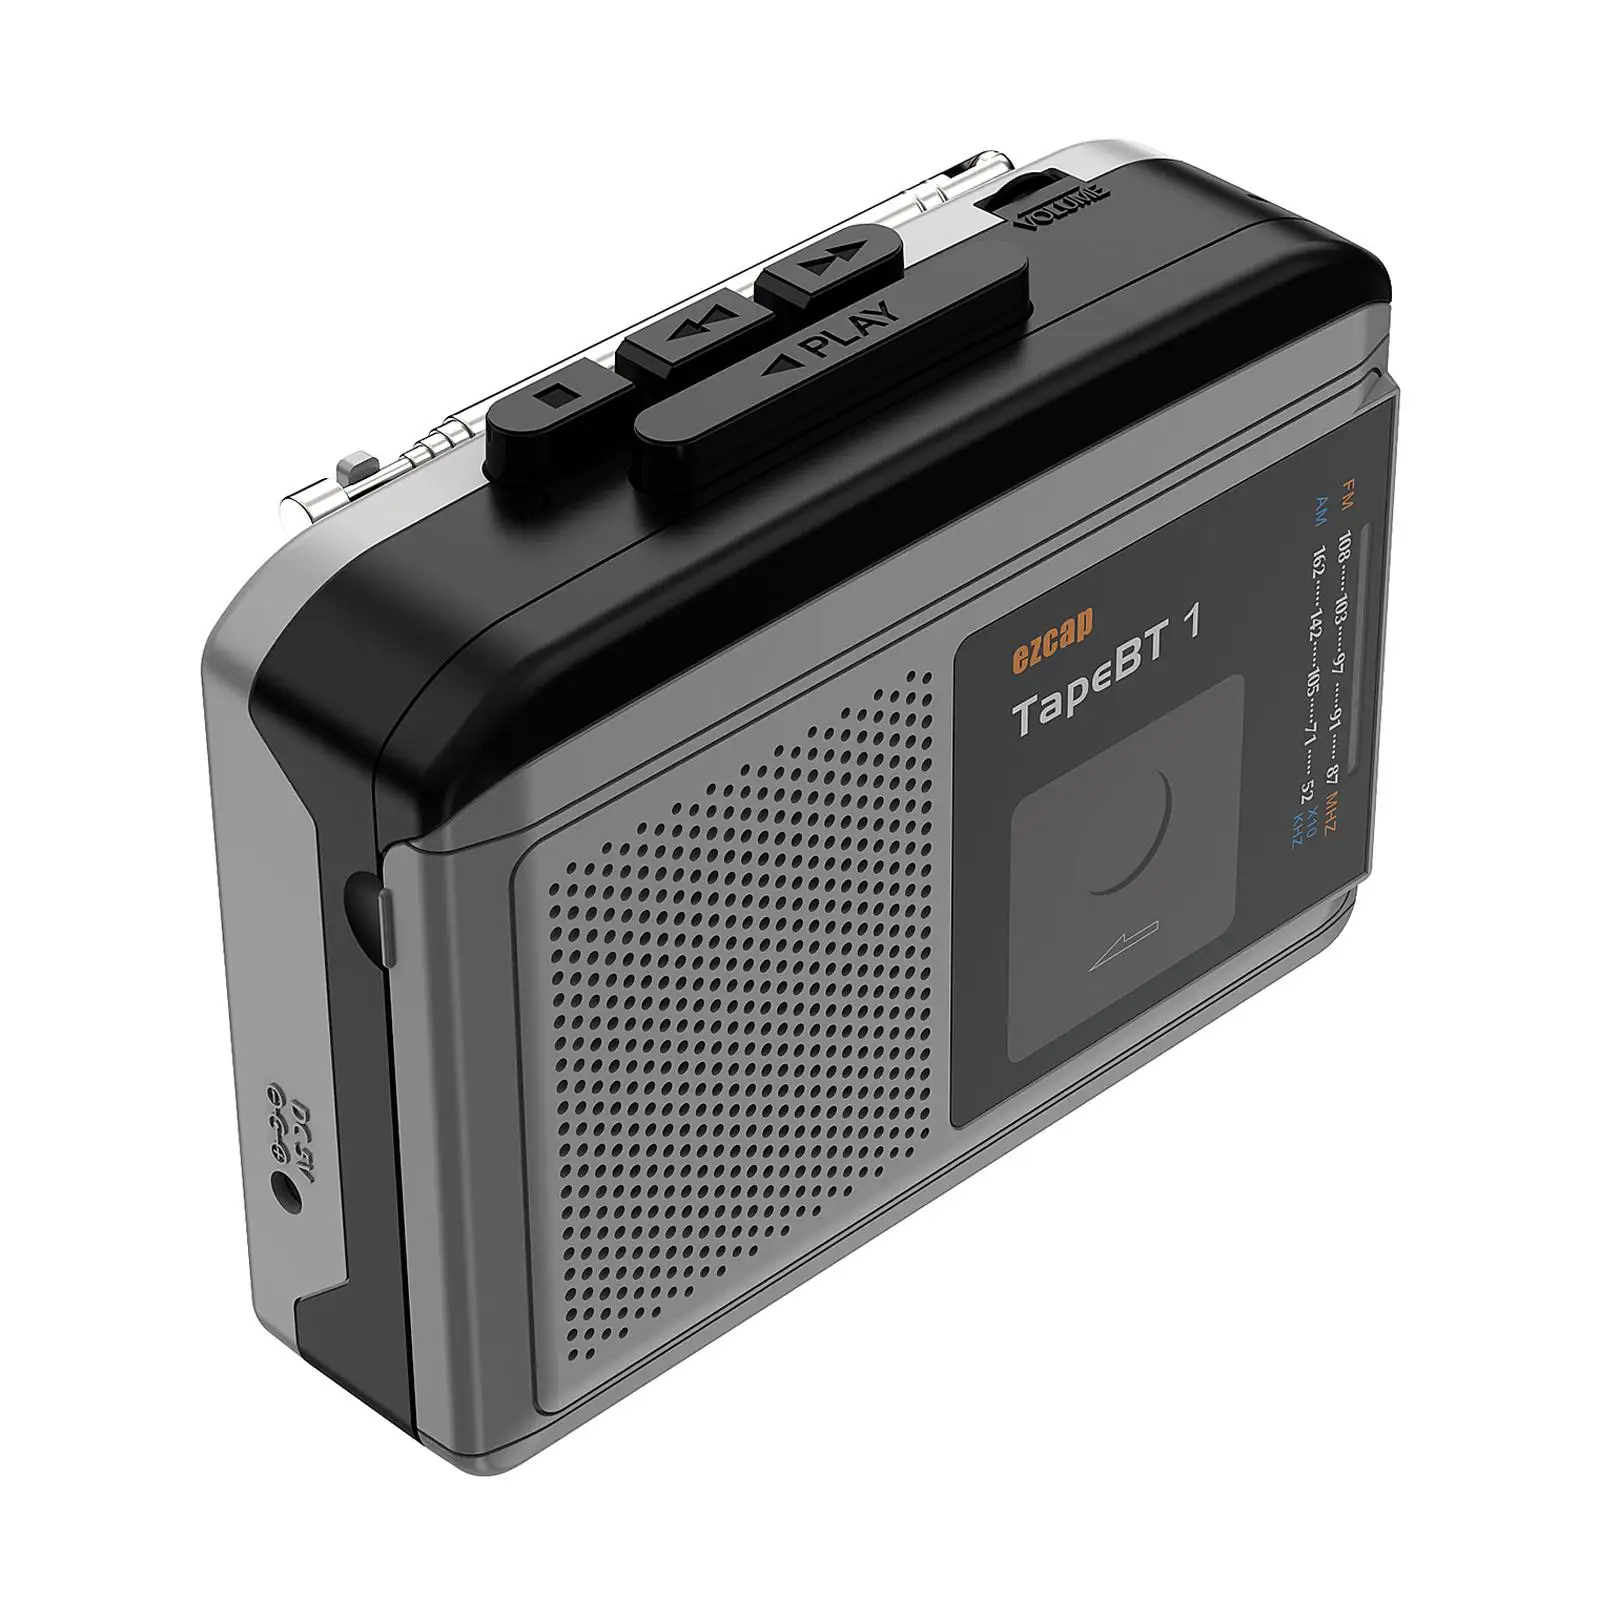 Cassette Player Built-In Speaker Earphone 2AA Battery or USB Power Supply